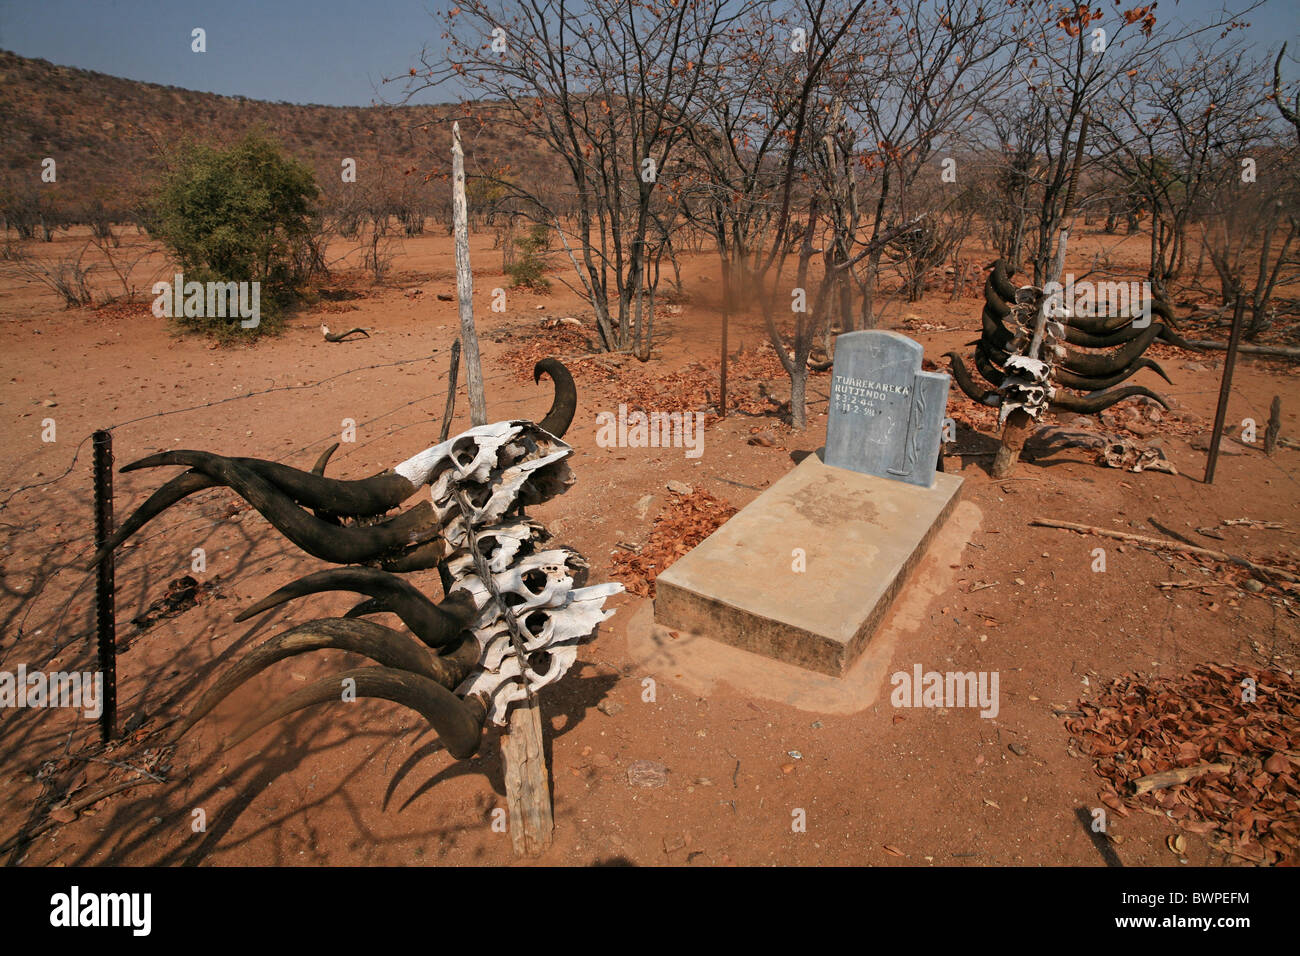 Namibia Afrika Himbas Sommer 2007 Afrika einheimischen traditionellen einheimischen Ureinwohner Grab Tierschädel t Stockfoto